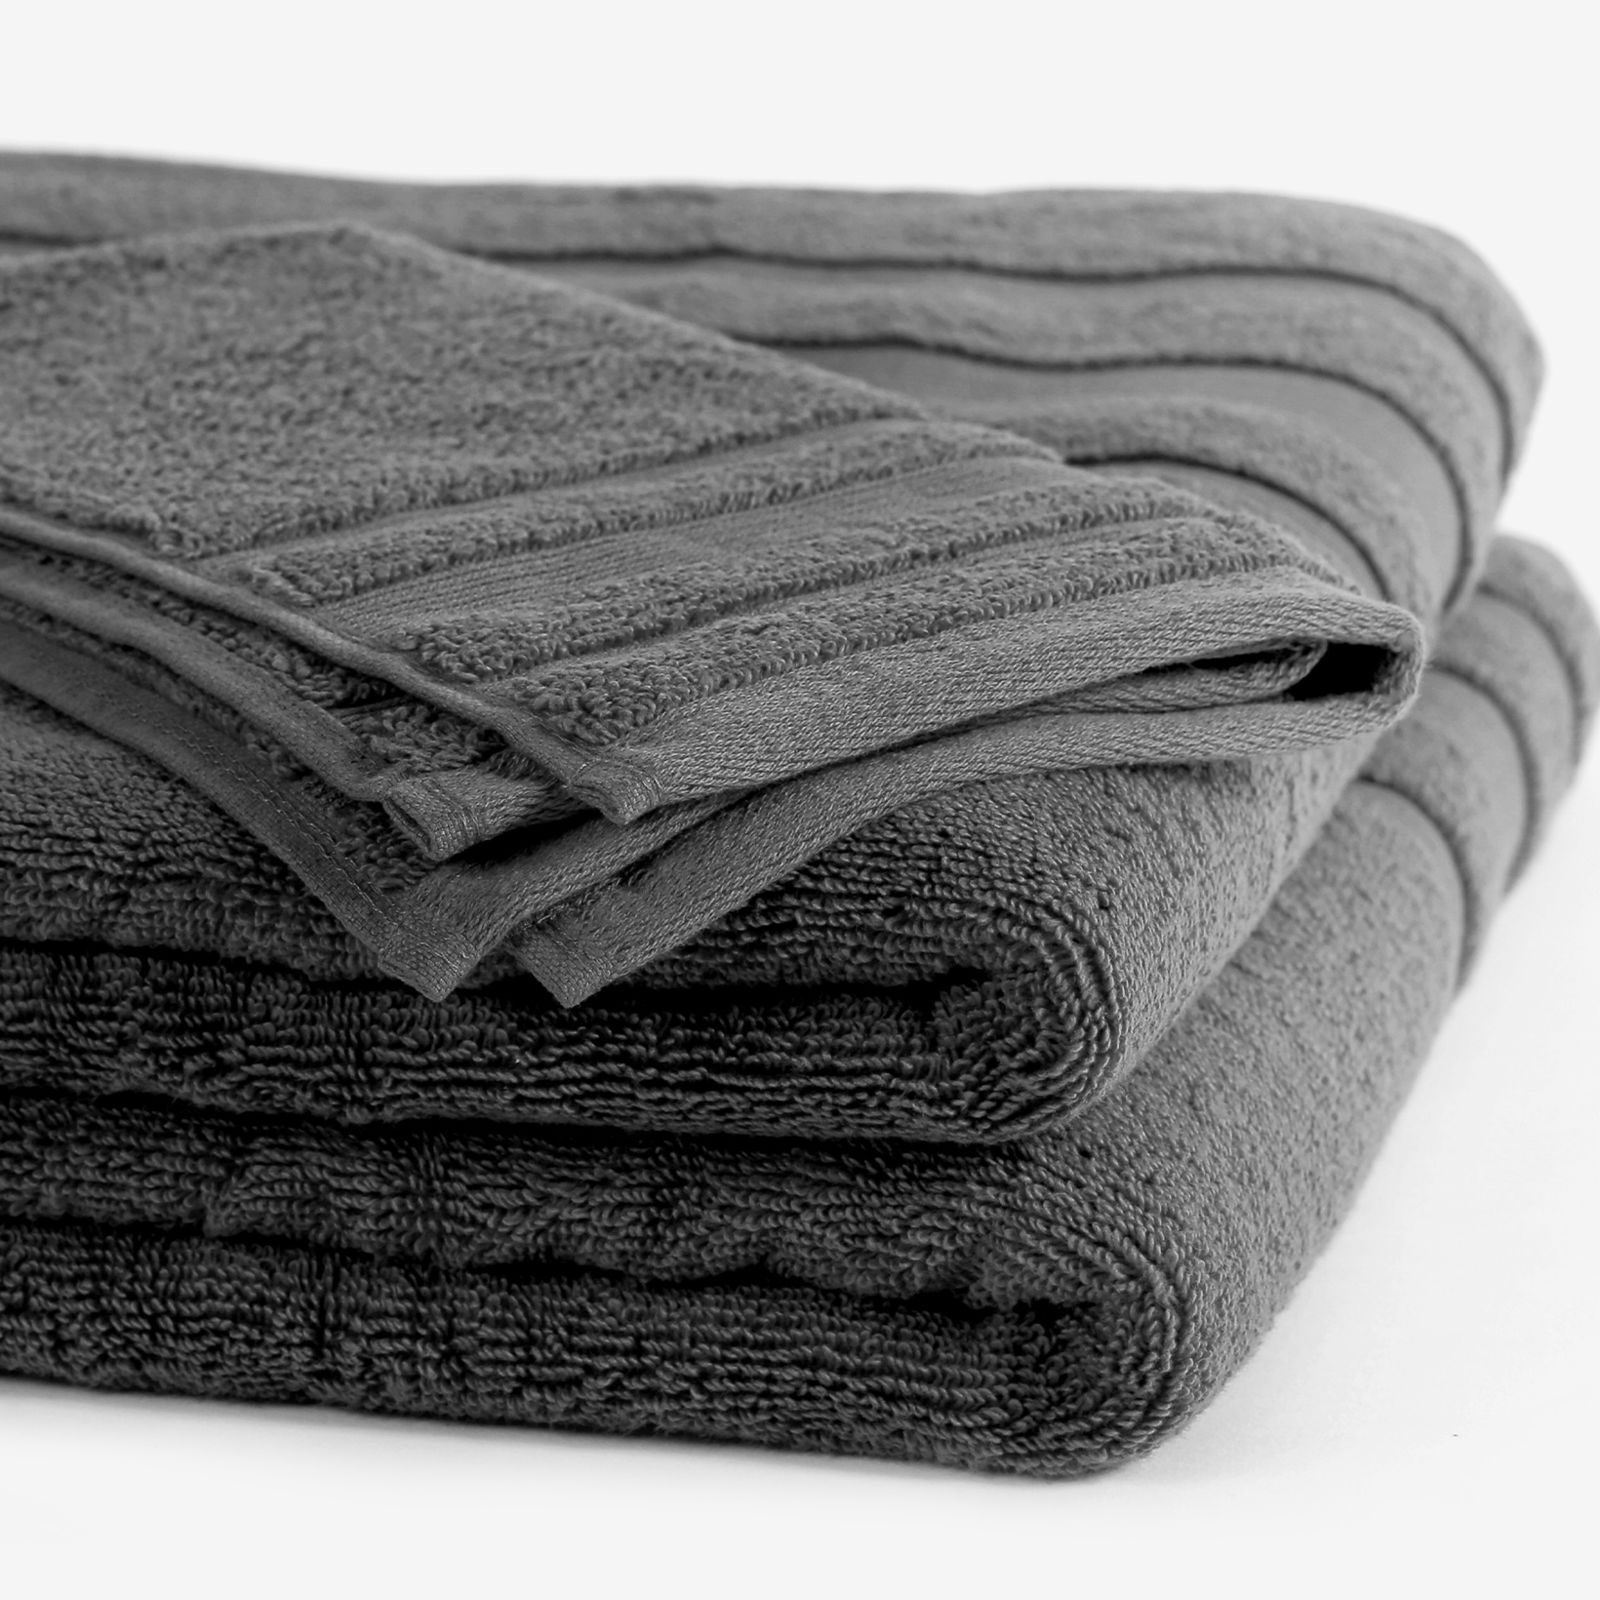 Hebký ručník z organické bavlny - tmavě šedý